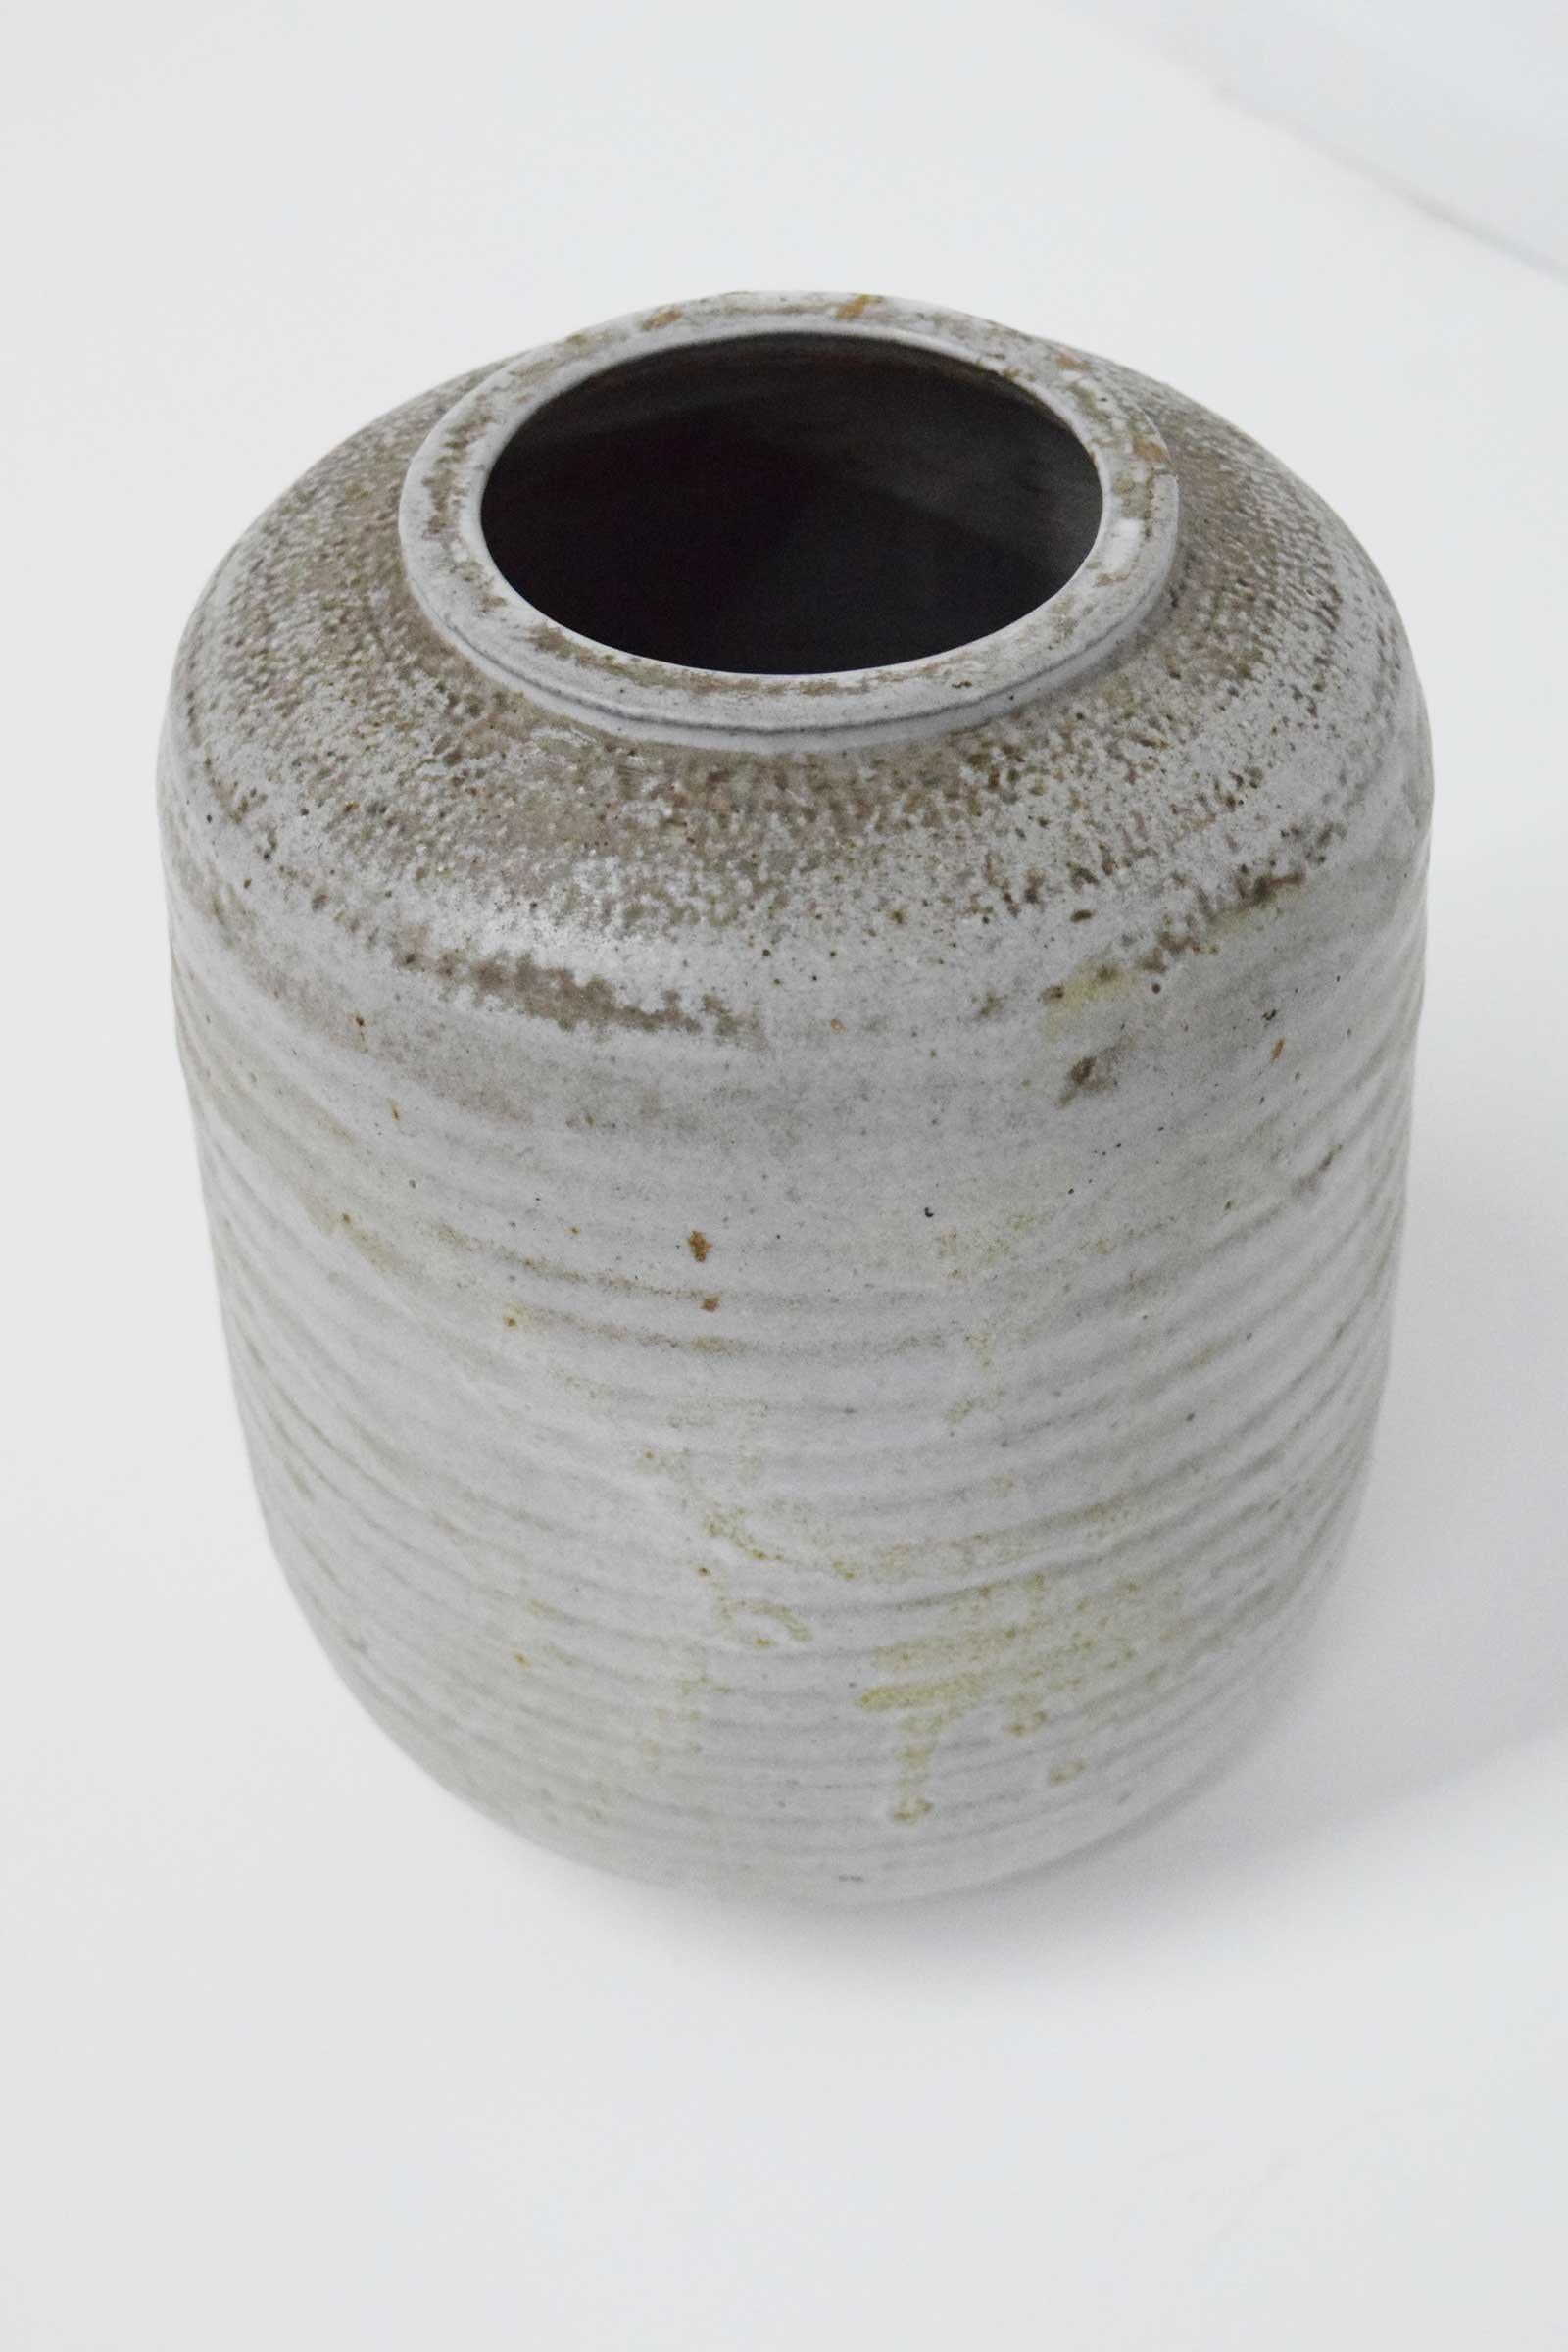 clyde burt pottery